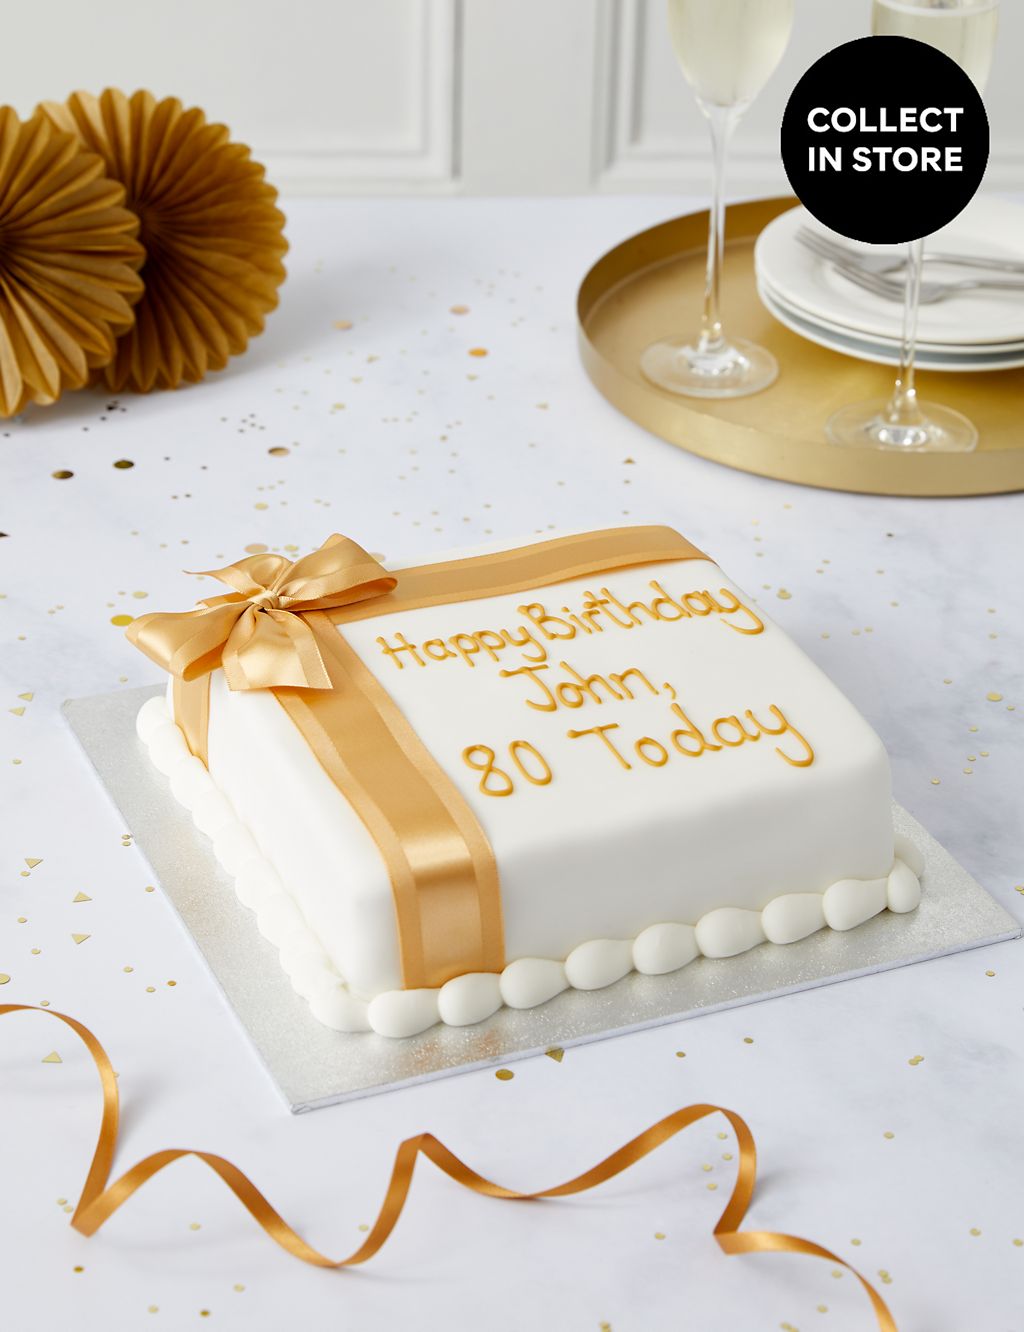 Personalised Celebration Sponge Cake with Gold Ribbon (Serves 30) 3 of 6